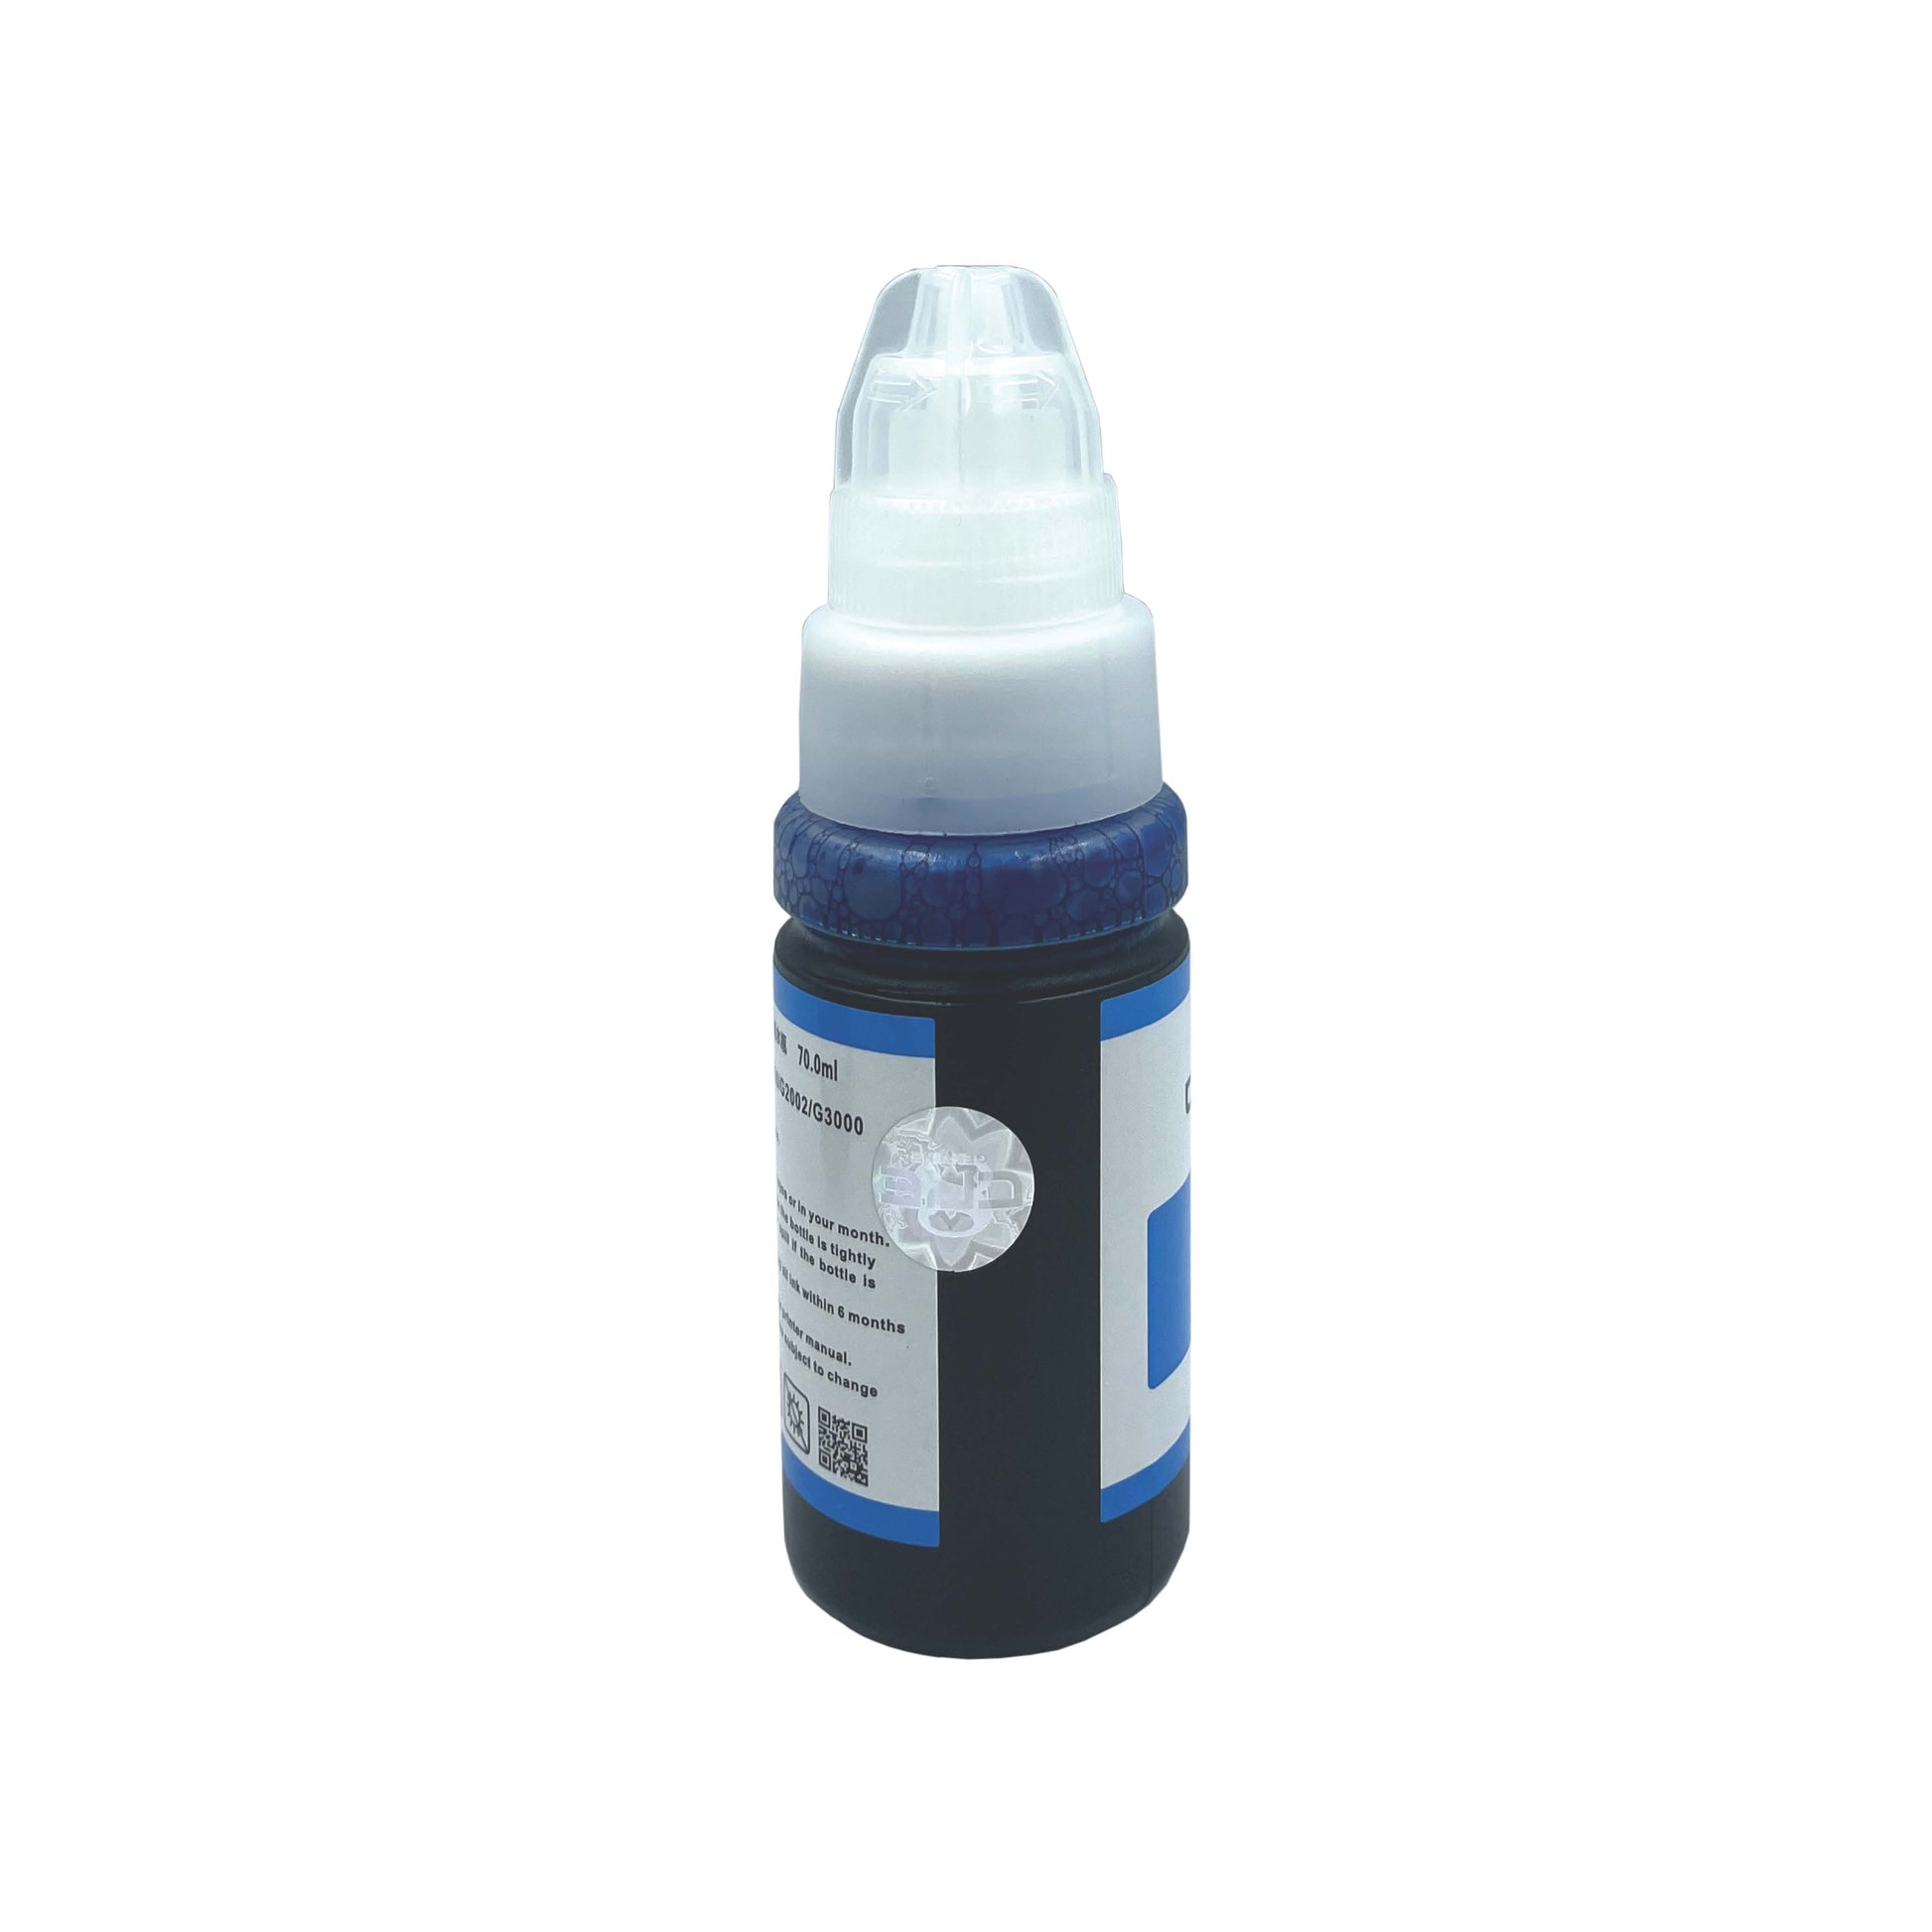 CRE8 | Compatible Canon DG-780 Cyan Colour Refill Bottle Ink